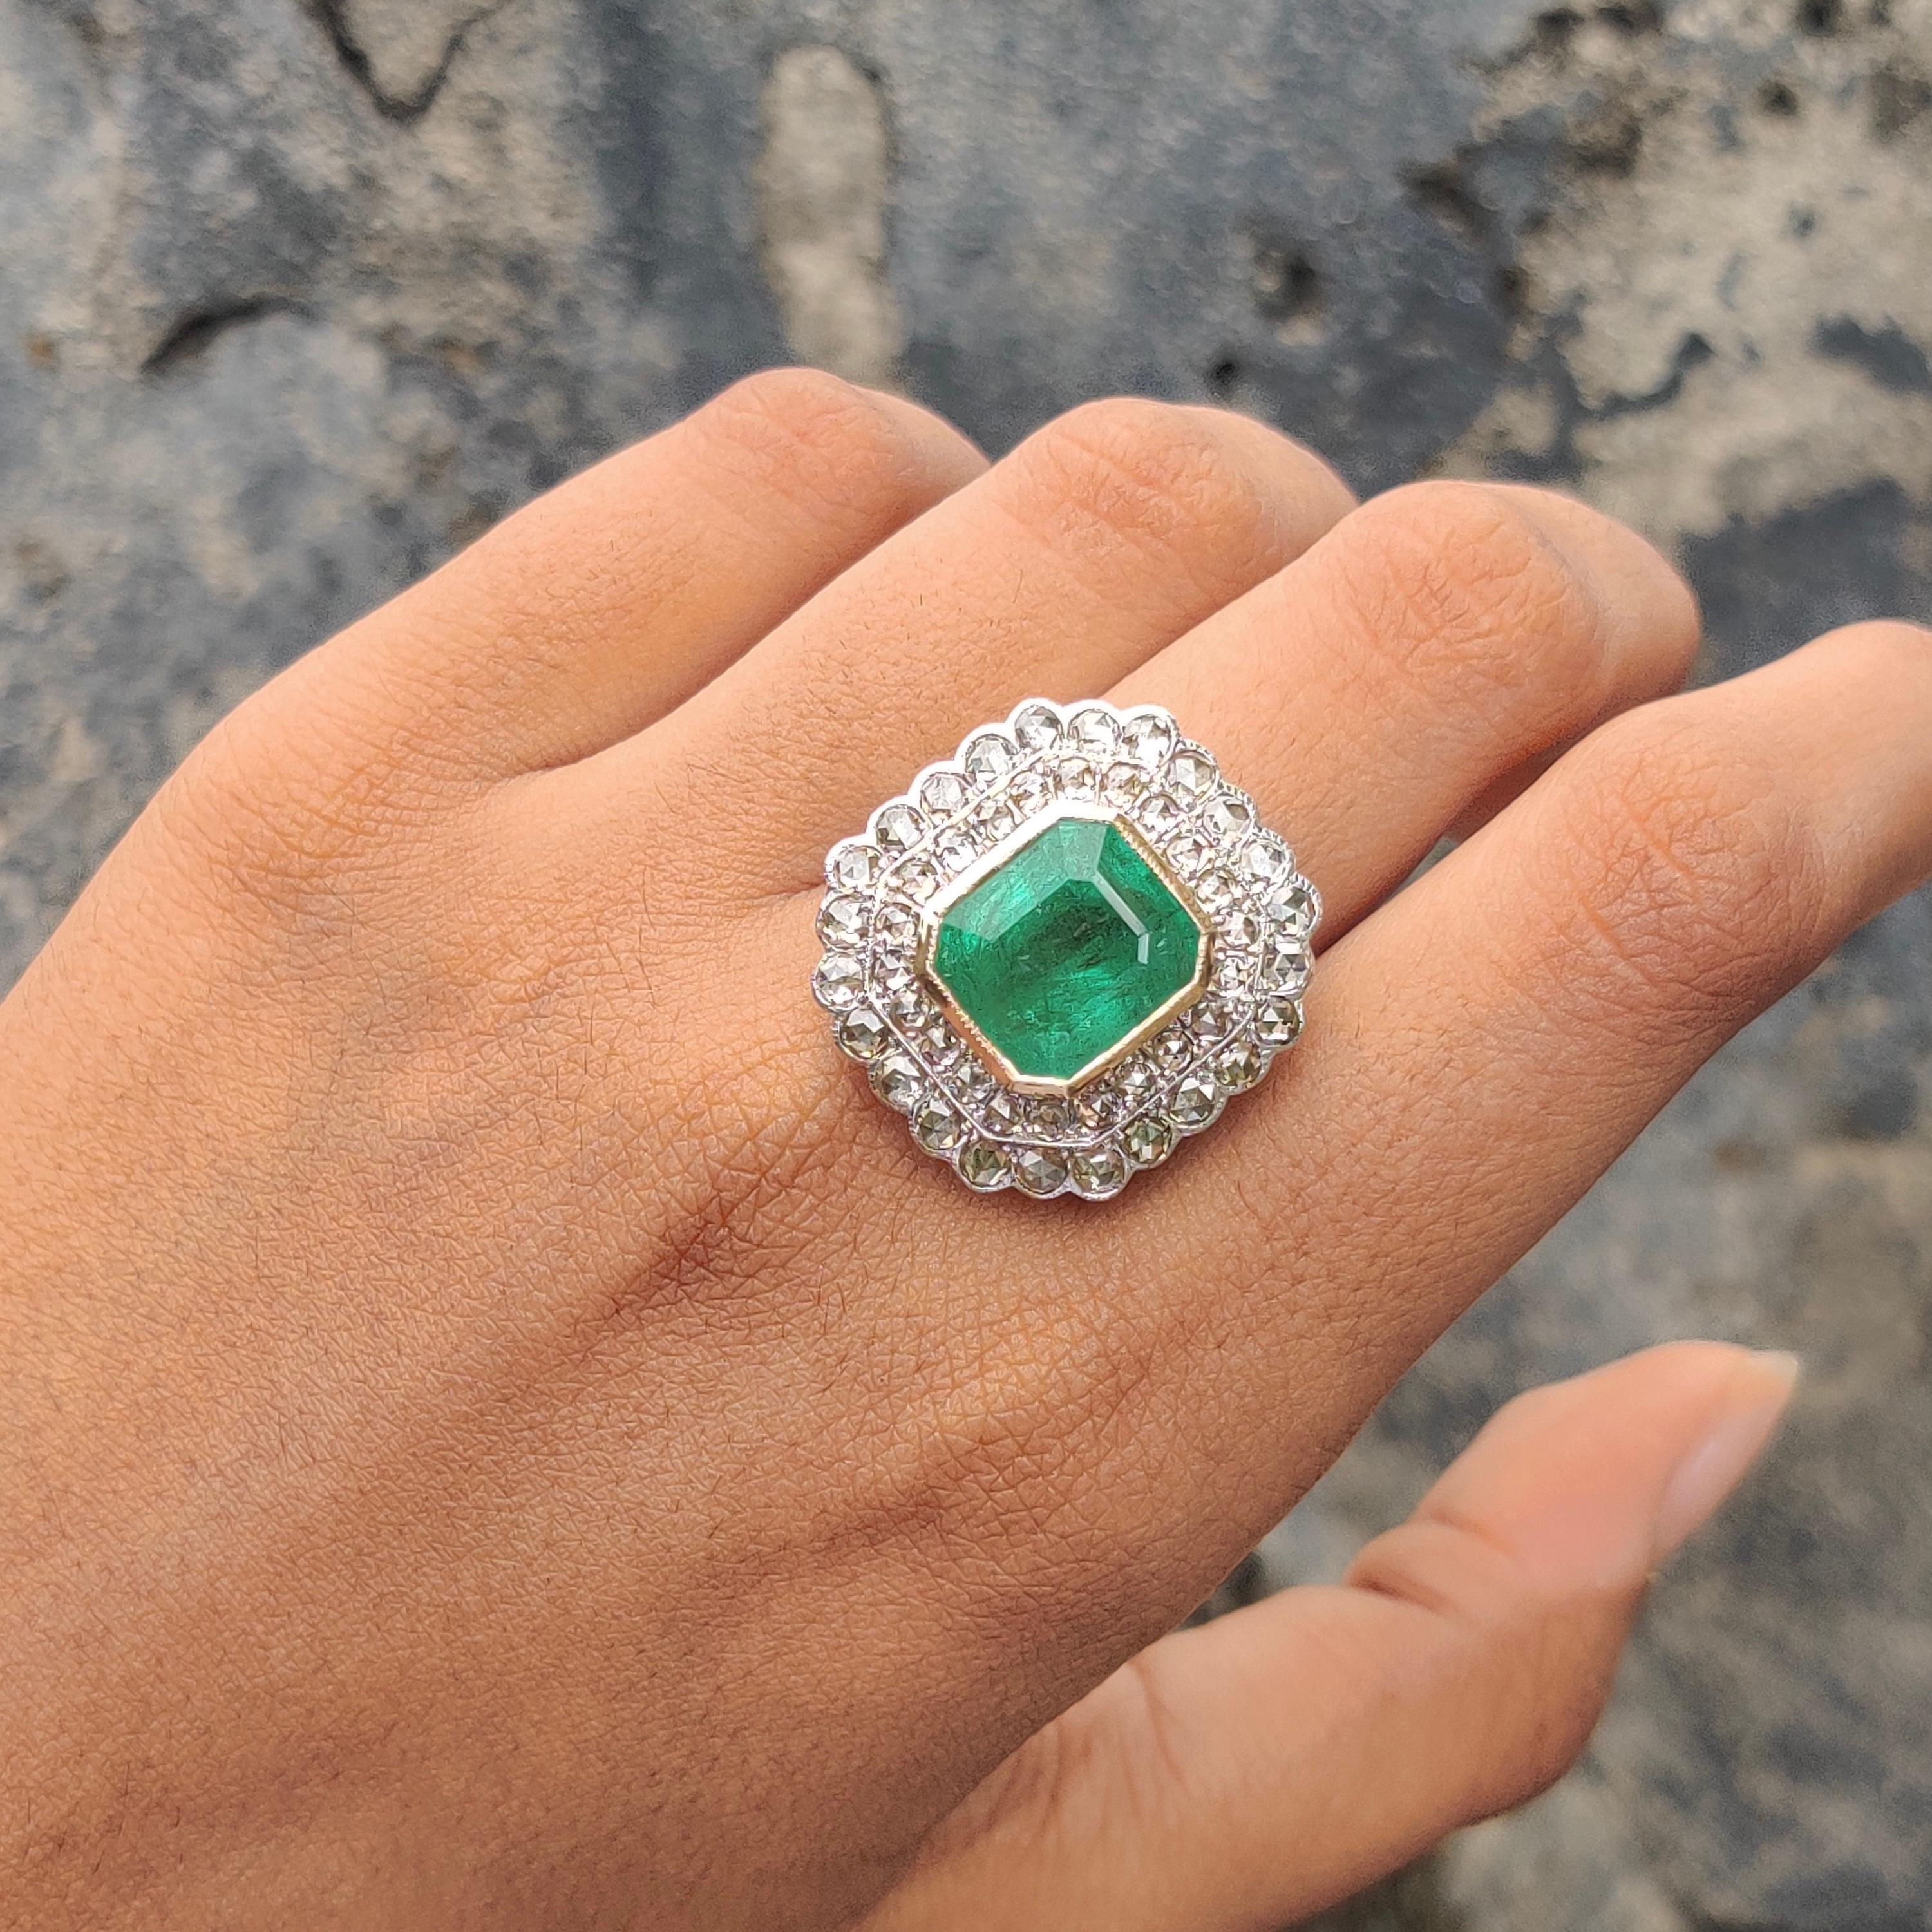 Dieser Smaragdring im Art-Déco-Stil ist ein wahres Zeugnis zeitloser Schönheit und besticht durch seine Anziehungskraft. In seinem Zentrum befindet sich ein strahlender 8,30-Karat-Smaragd, der einen bezaubernden grünen Farbton ausstrahlt, der die